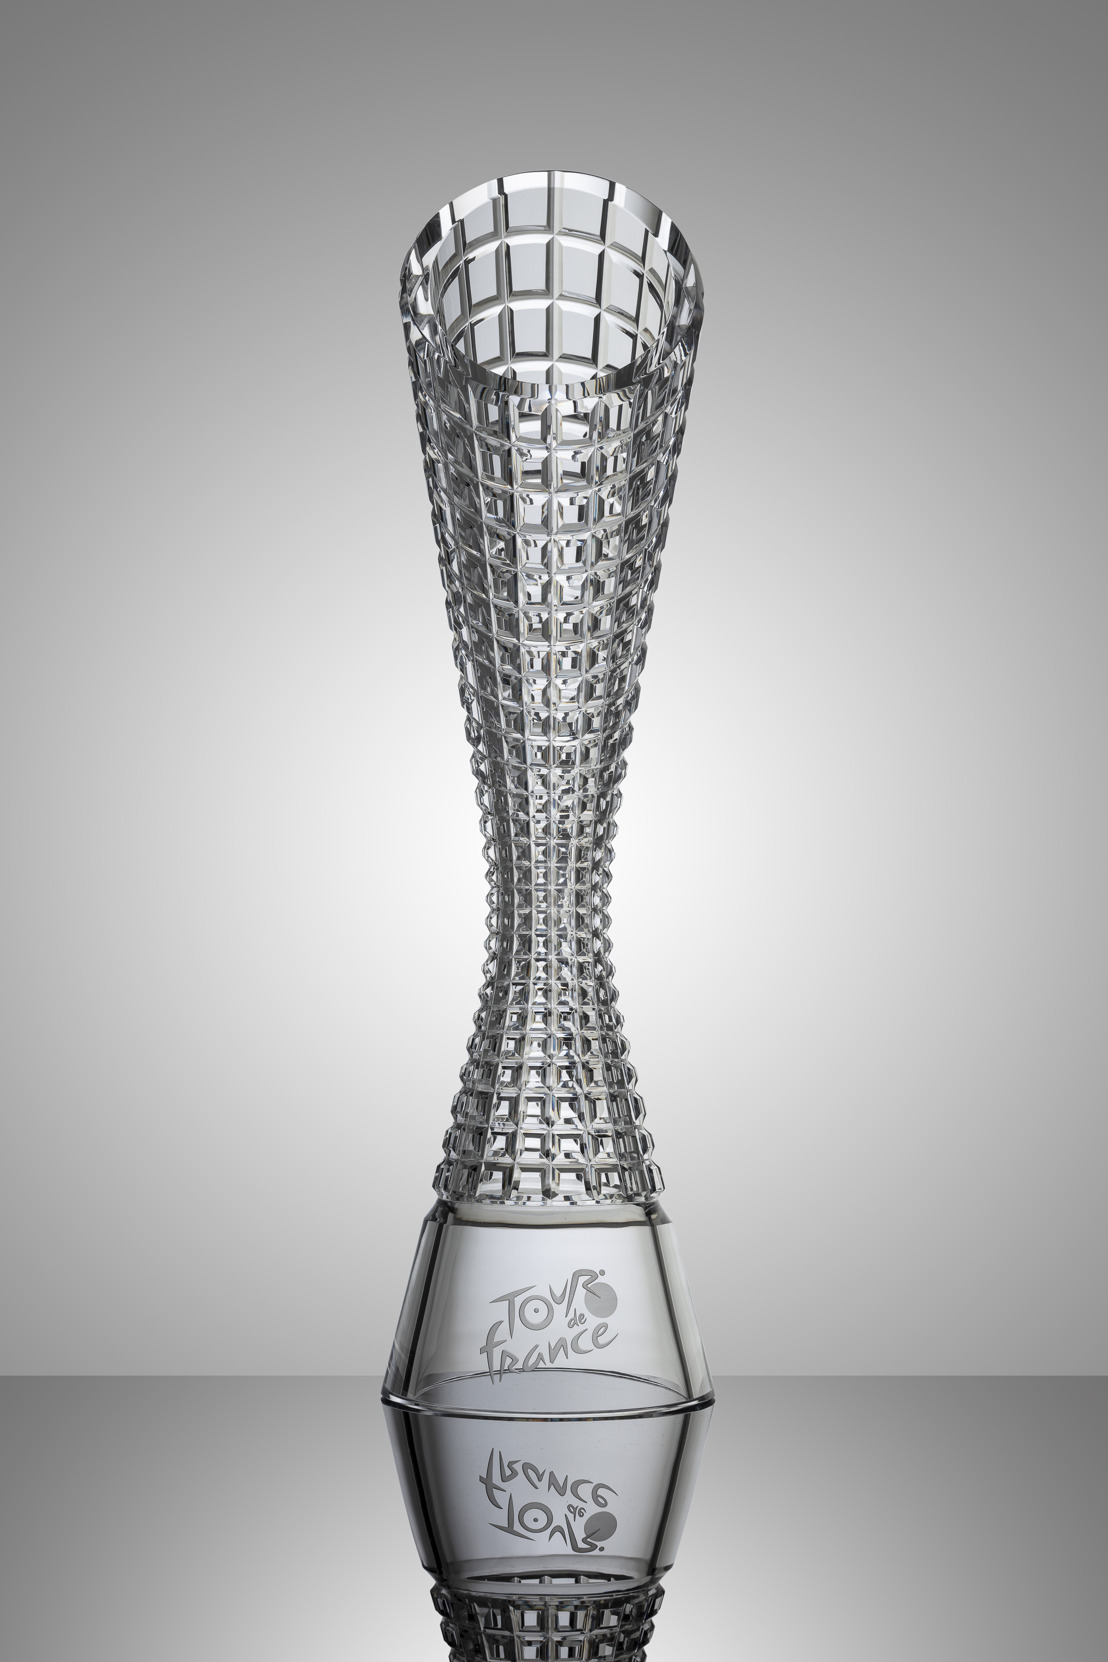 ŠKODA Design crée pour la 10e fois les trophées pour les vainqueurs du Tour de France